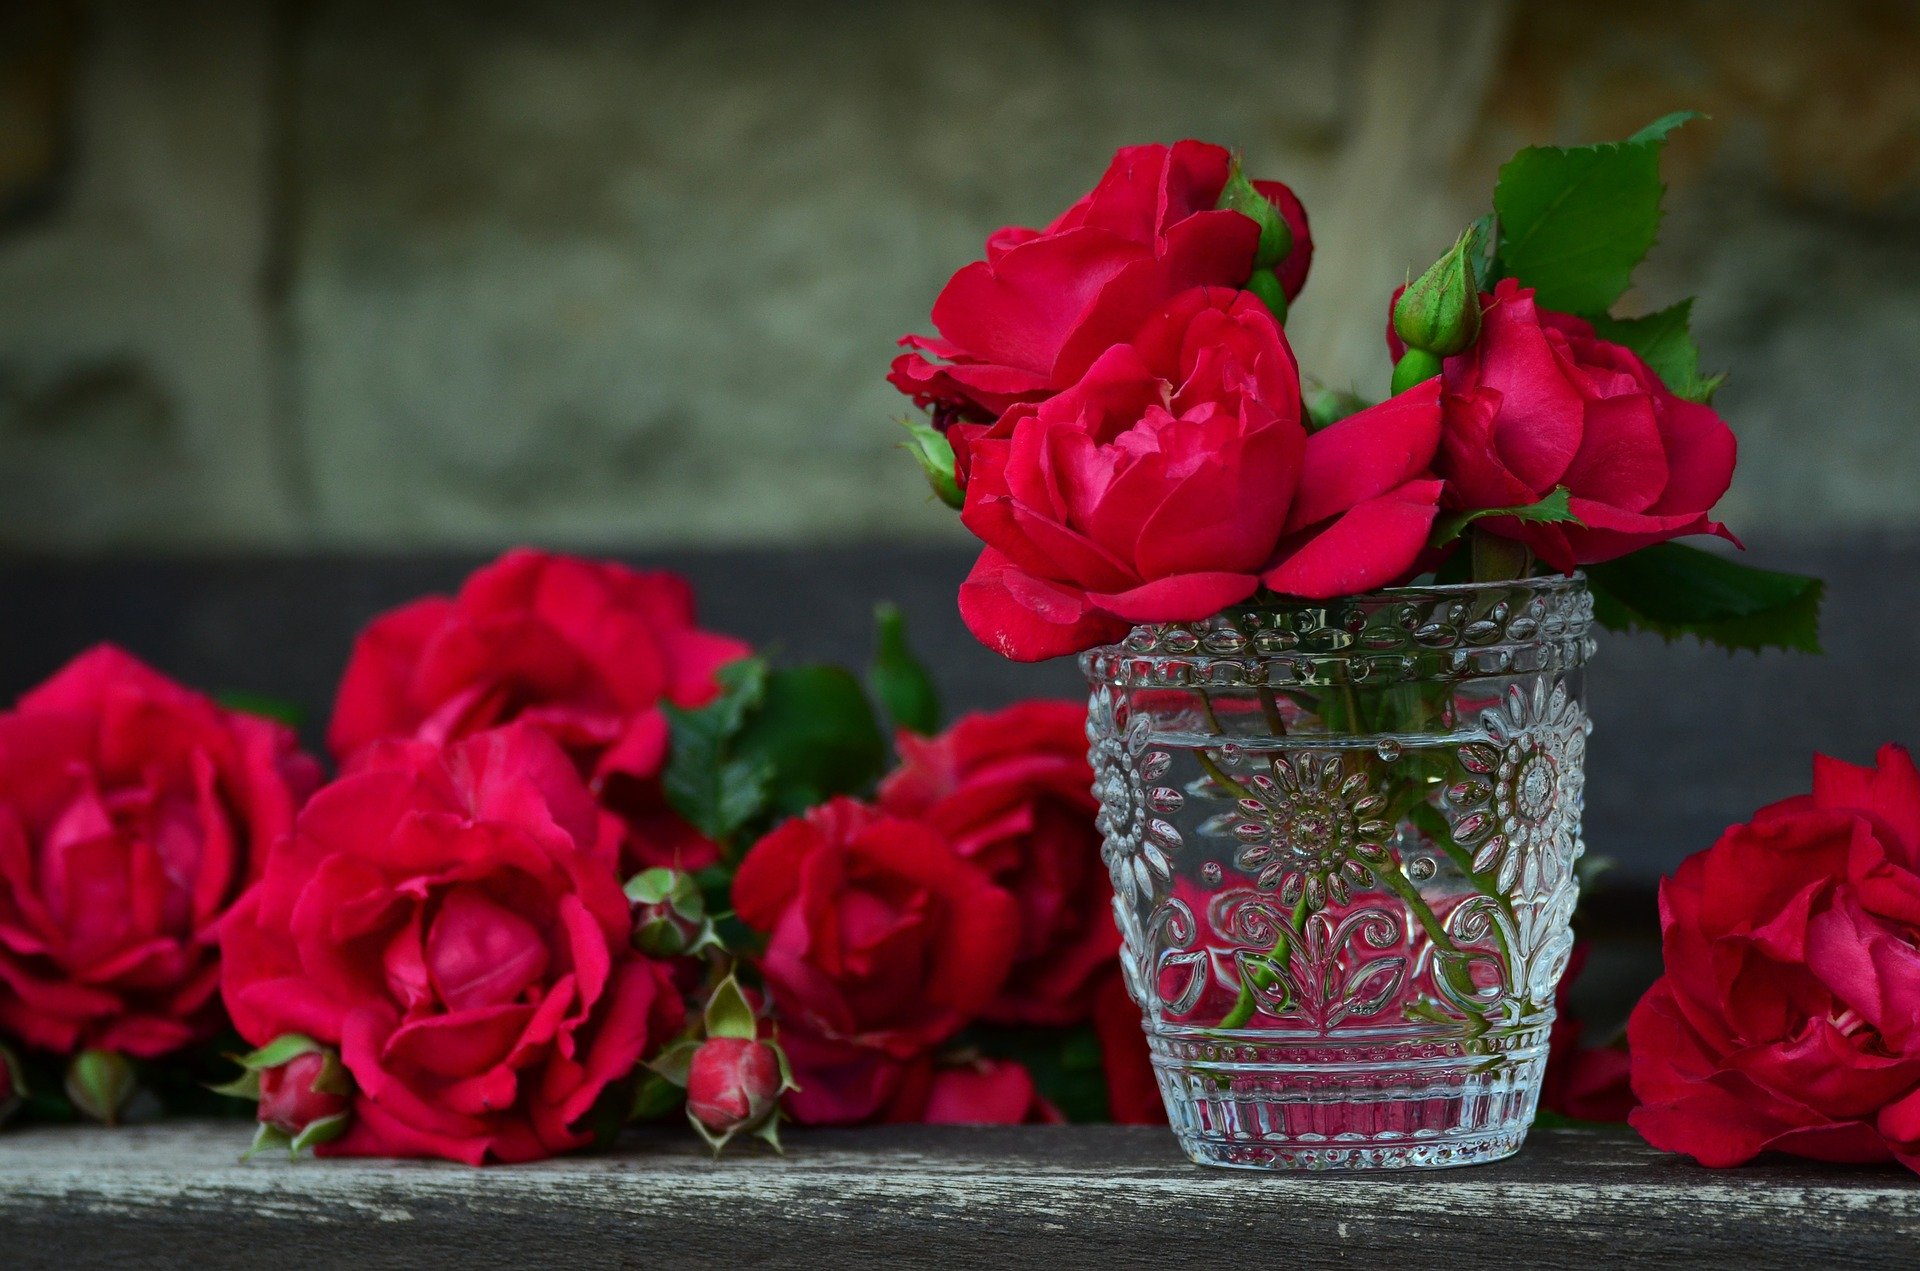 အိမ်ထောင်ရှင်အမျိုးသမီးအတွက် နှင်းဆီပန်းများအကြောင်း အိပ်မက်အဓိပ္ပာယ်ဖွင့်ဆိုချက်